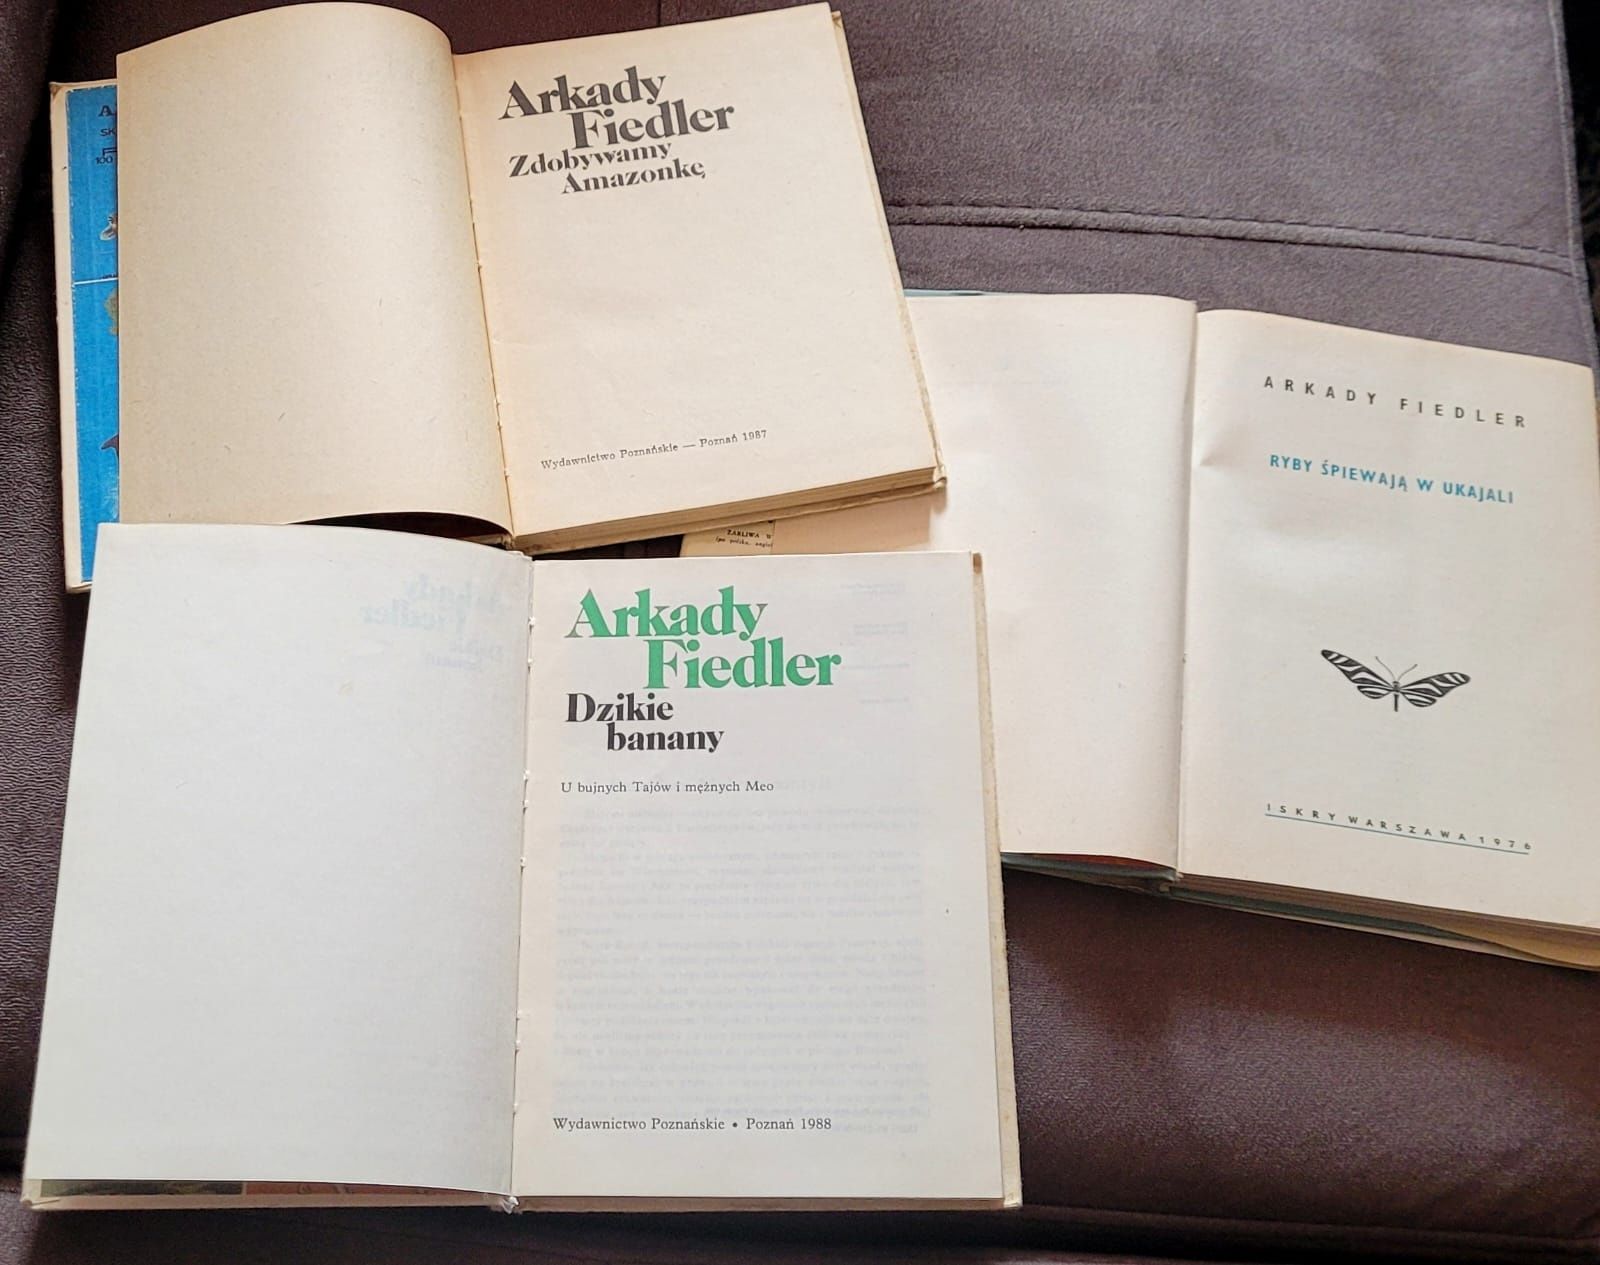 3 książki A. Fiedler - Dzikie banany, Zdobywamy Amazonkę, Ryby śpiewaj